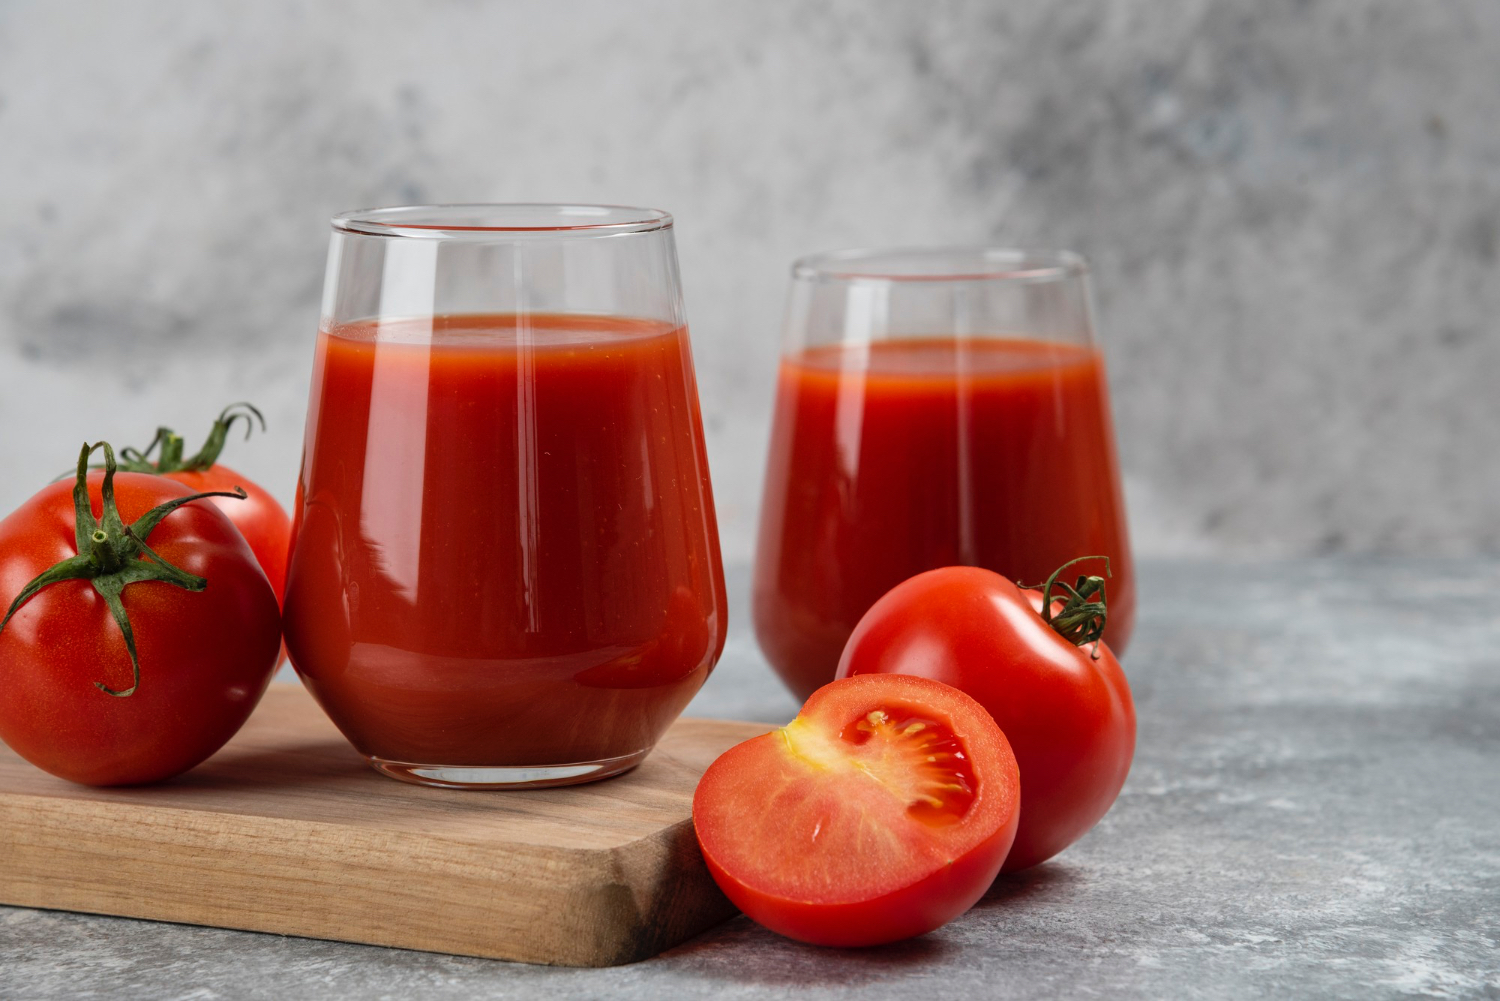 El jugo de tomate nos ayudaría a combatir bacterias intestinales como la Salmonella